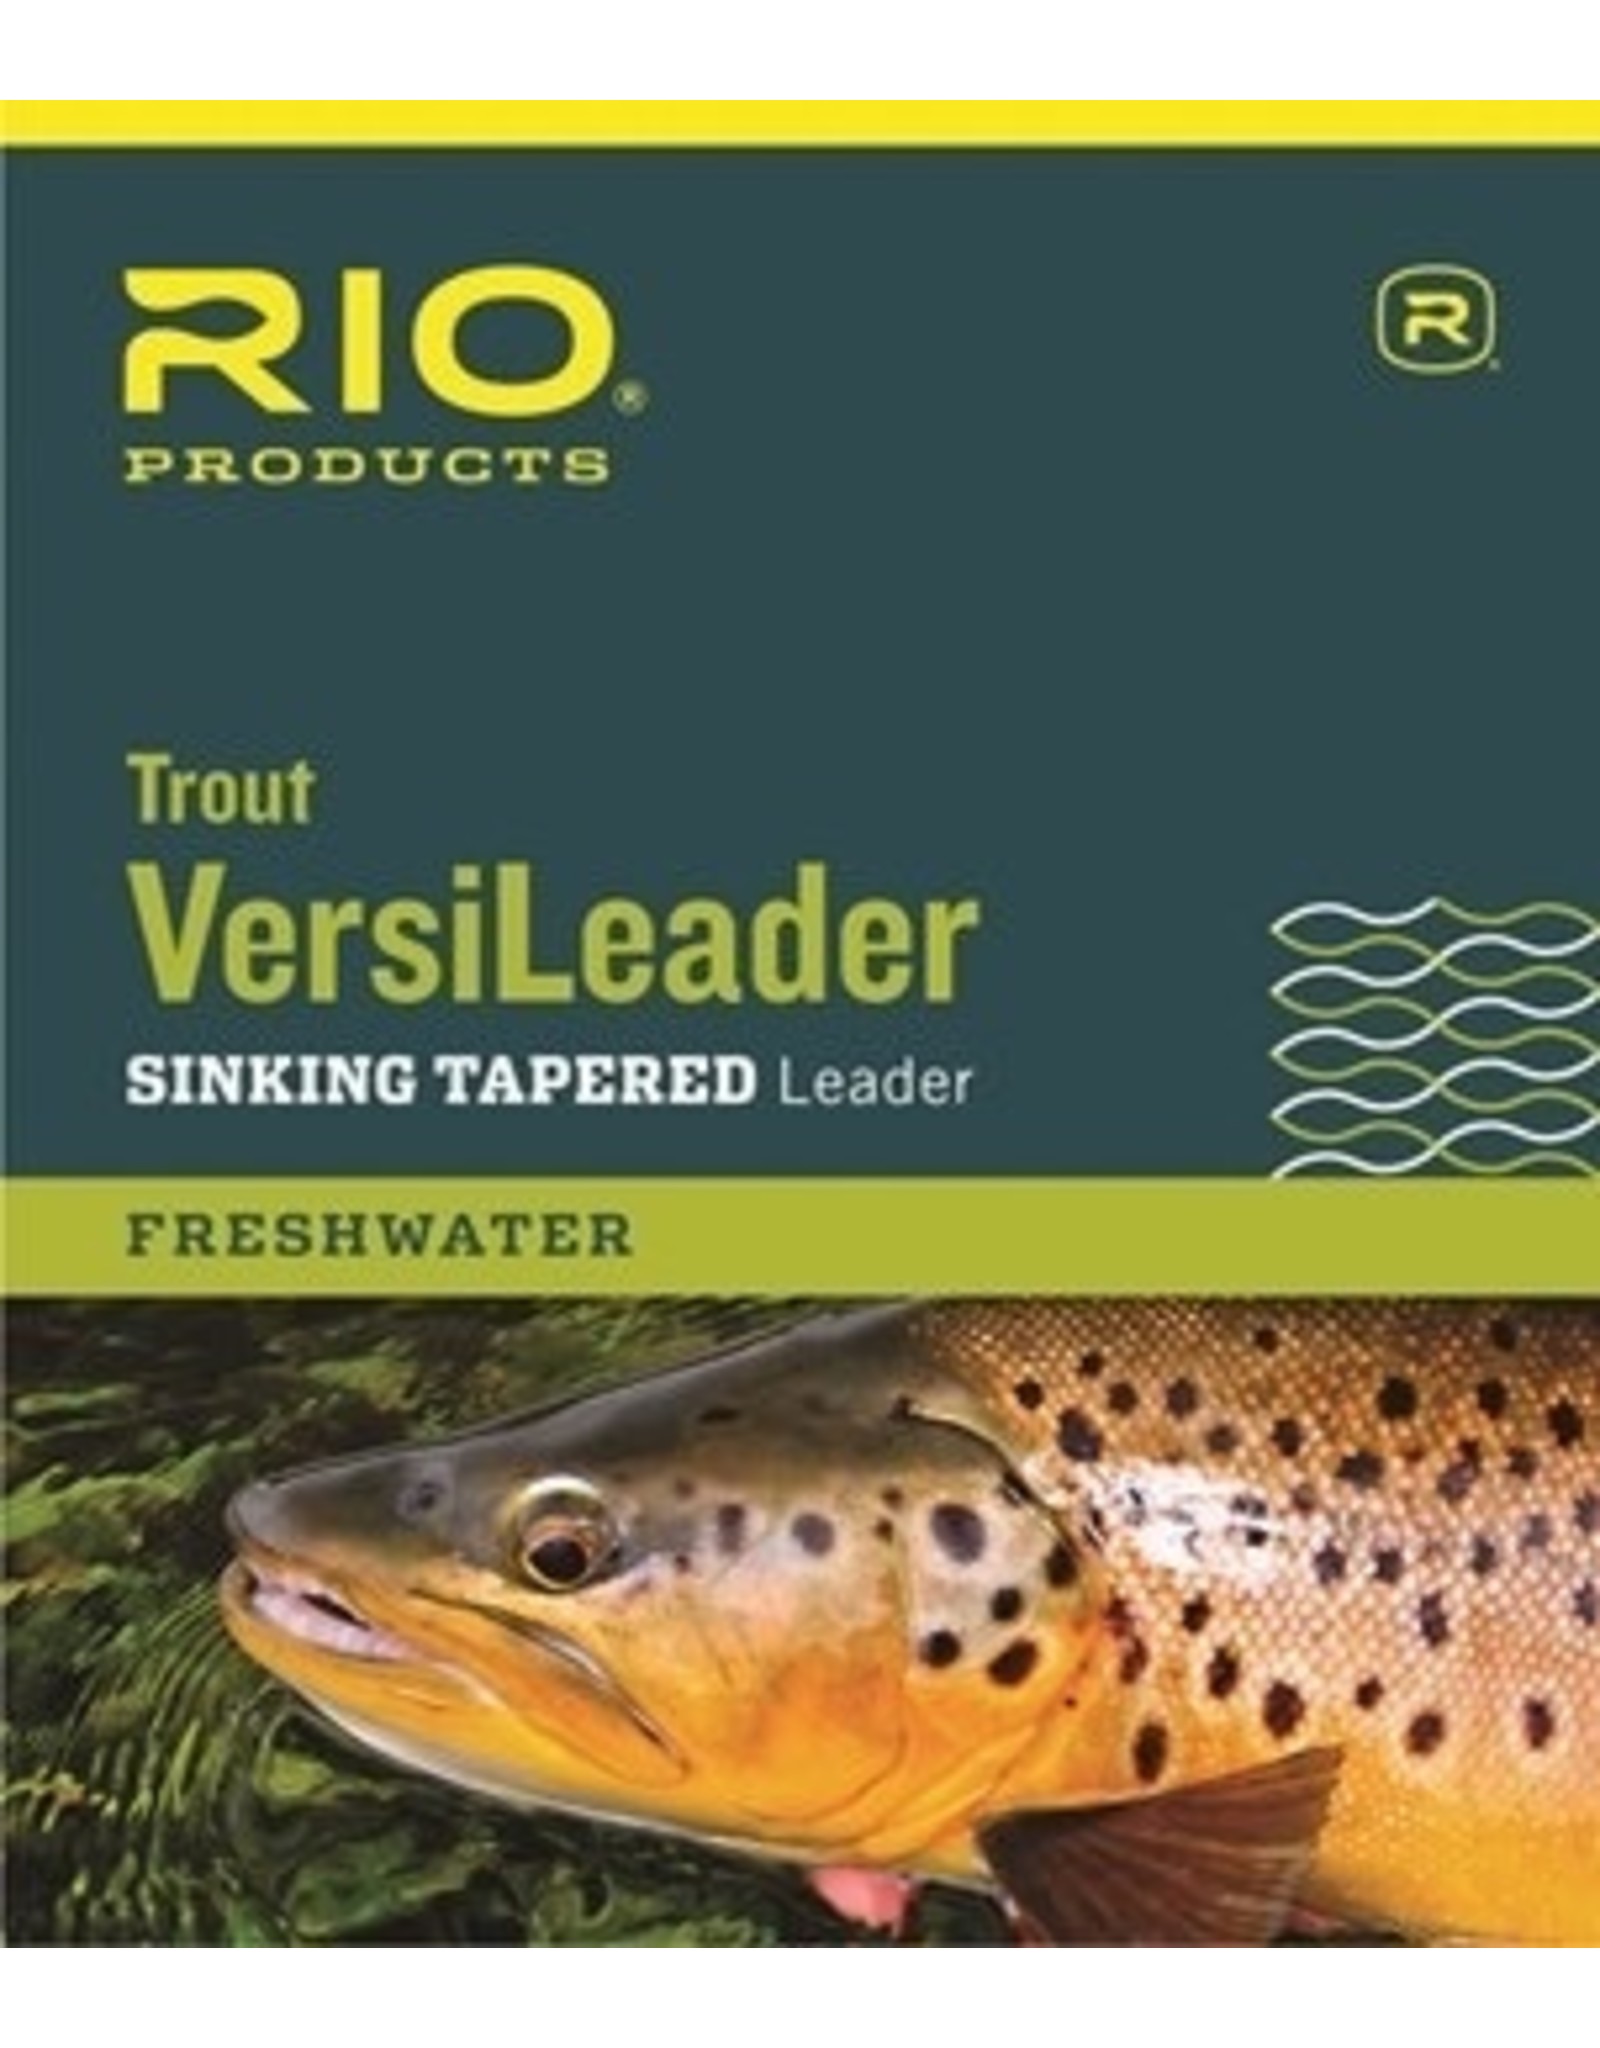 Rio RIO Trout Versileader 12’ 4ips 12 lb